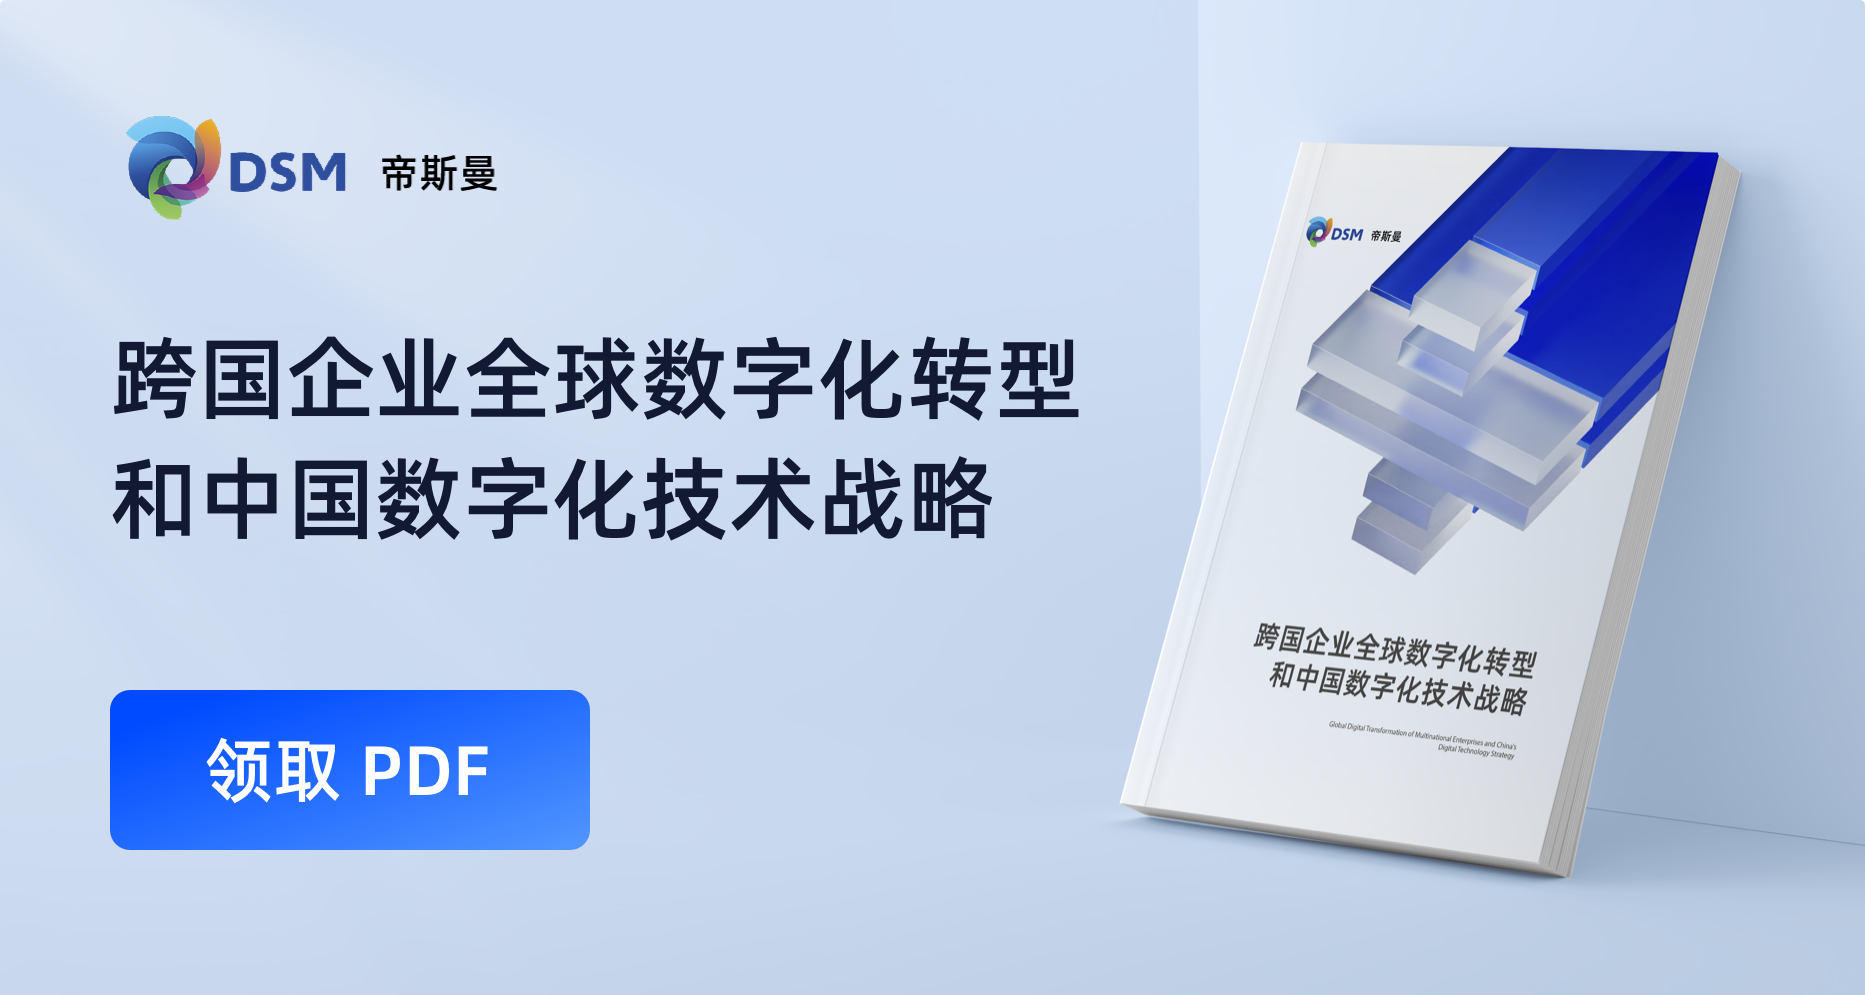 帝斯曼亚太区｜CIO <br/>《跨国企业的中国数字化技术战略》